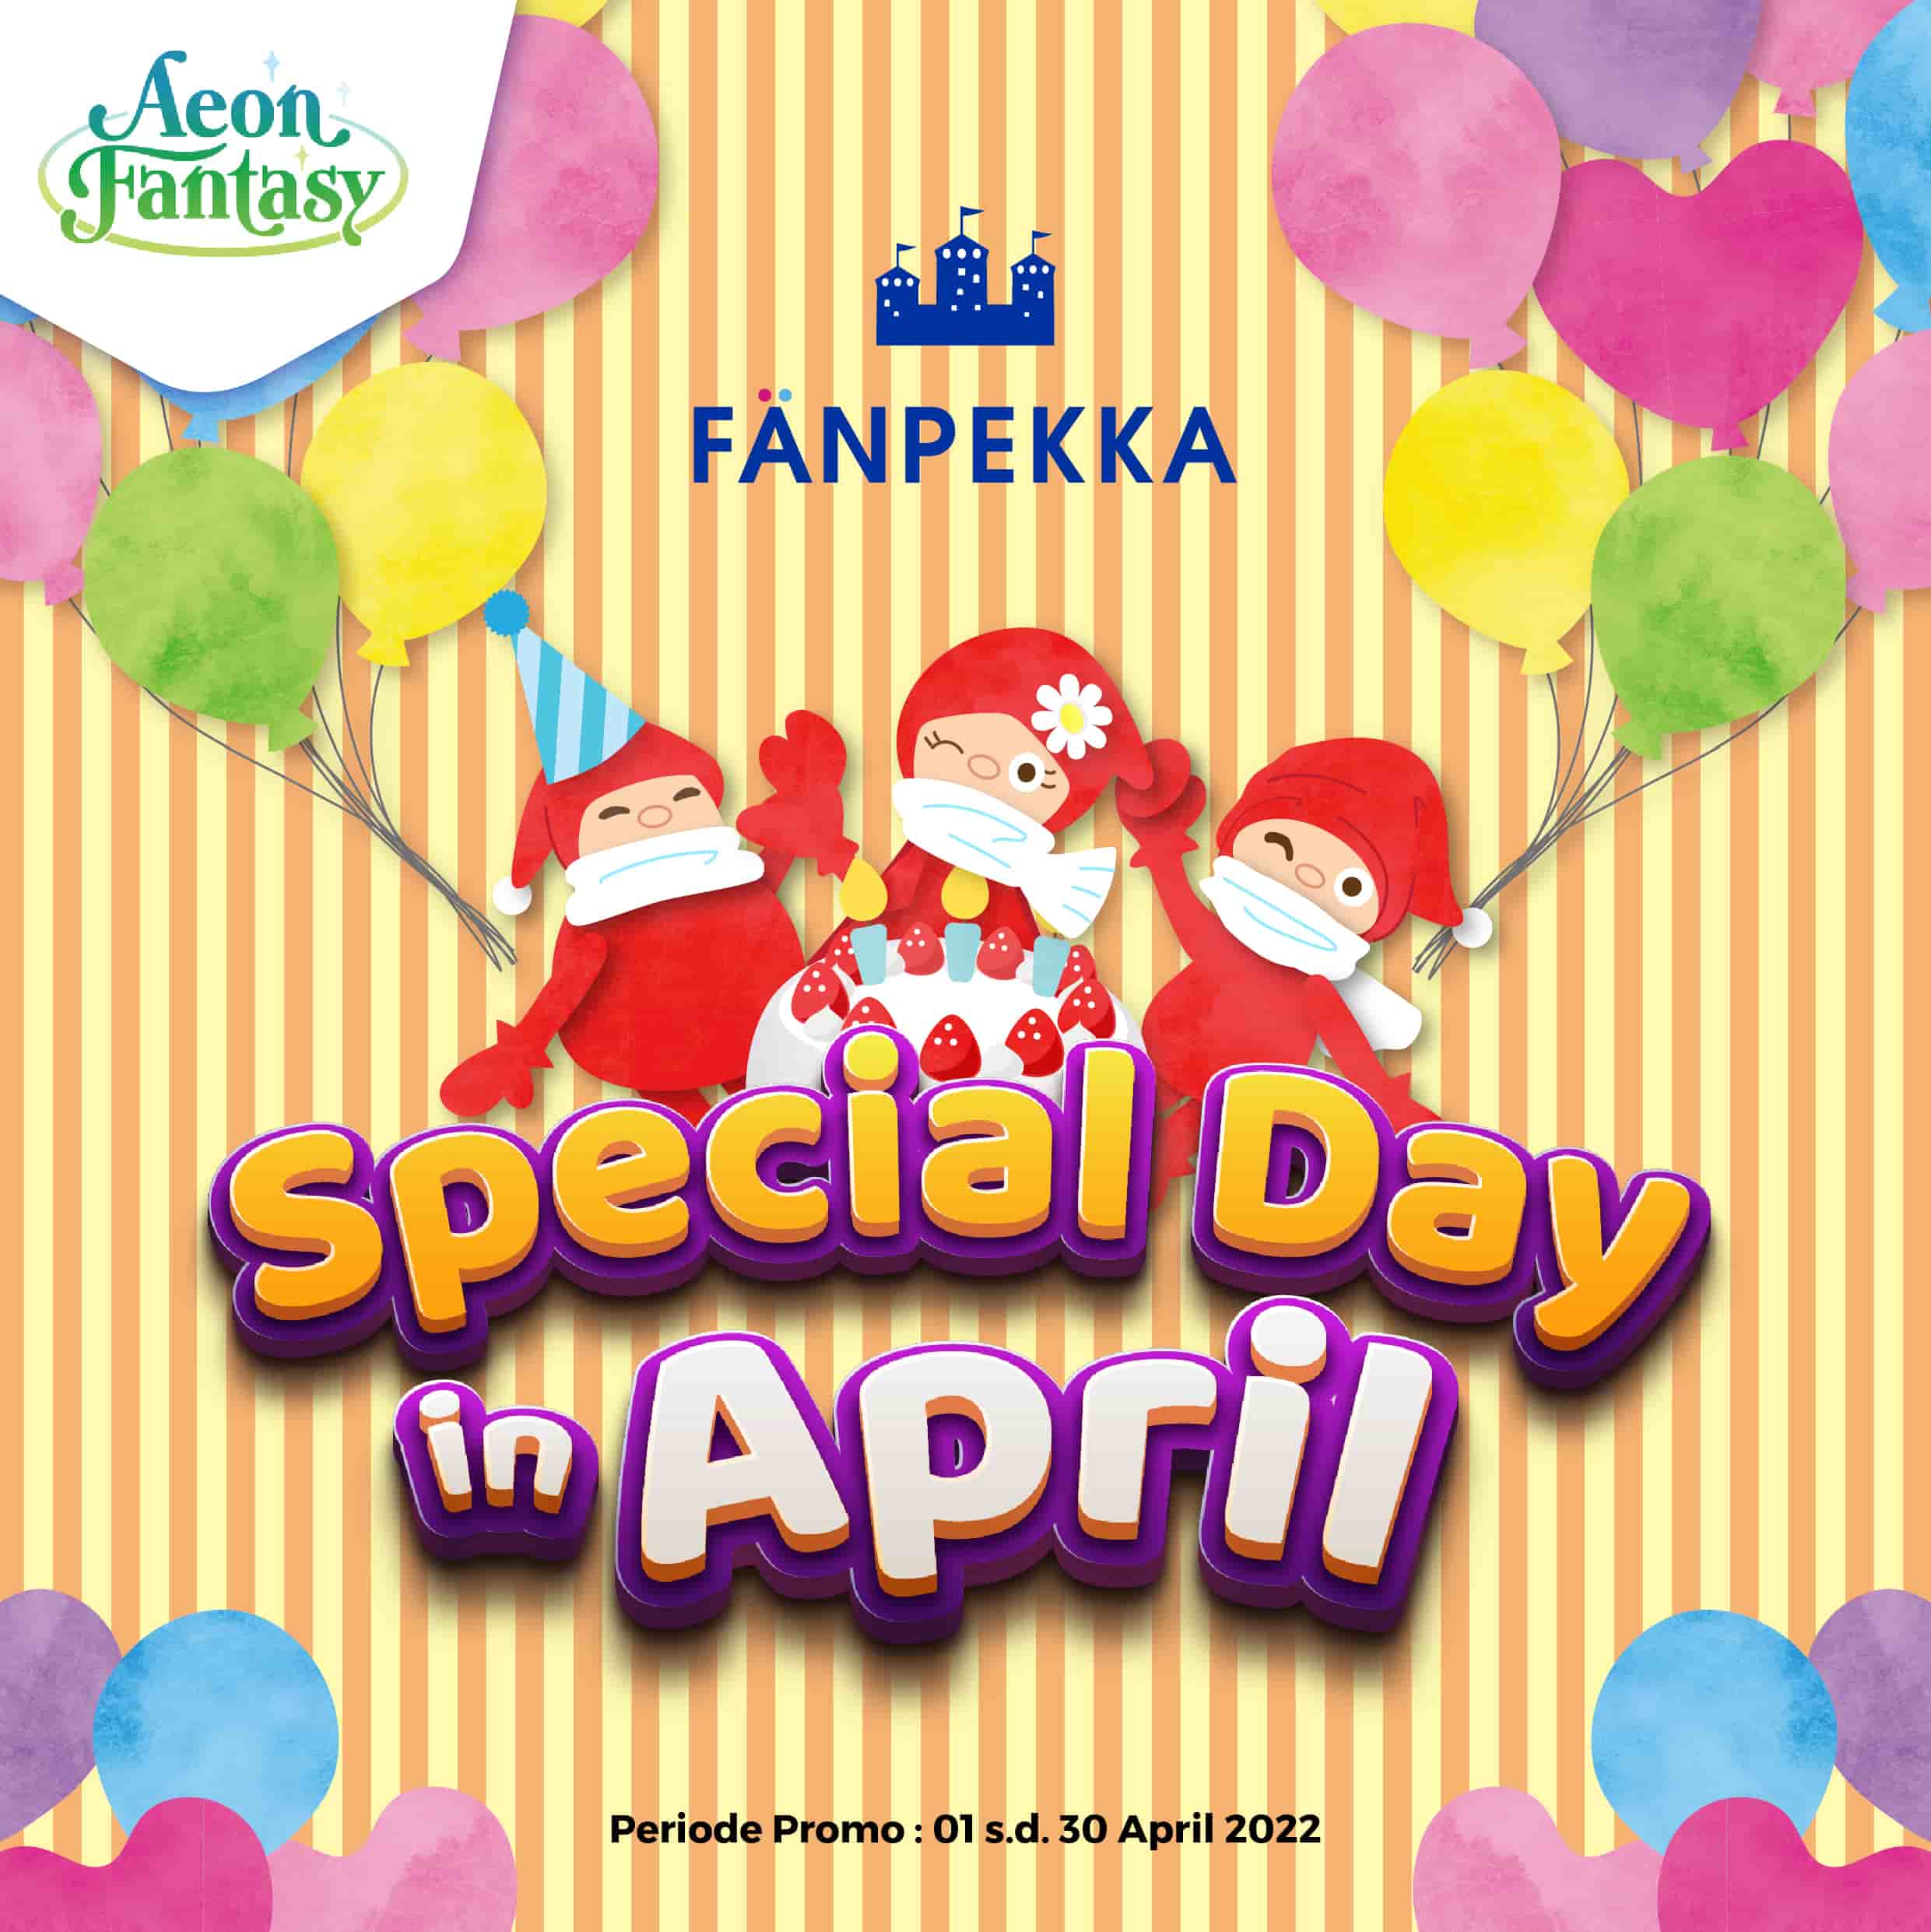 Fanpekka Special Day in April